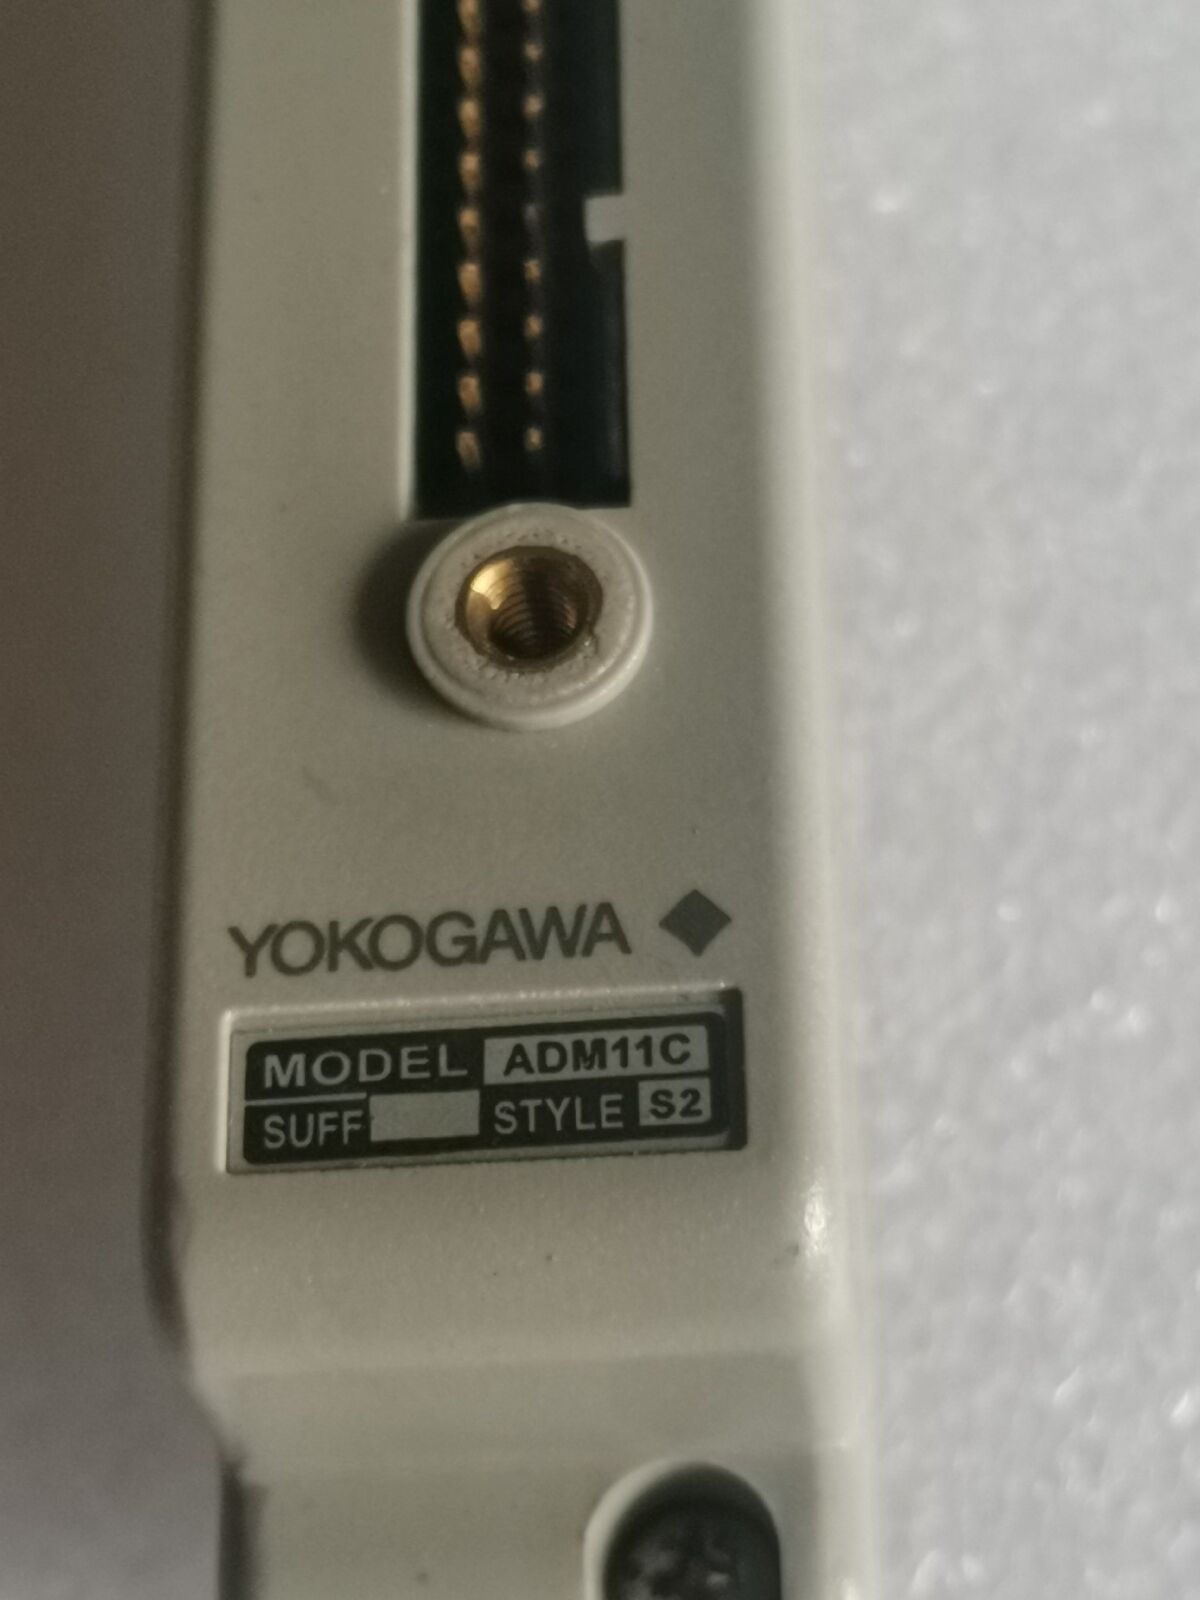 (ADM11C 可编程式逻辑控制器模块)YOKOGAWA 横河的模块 日本进口正品 全新原装现货供应